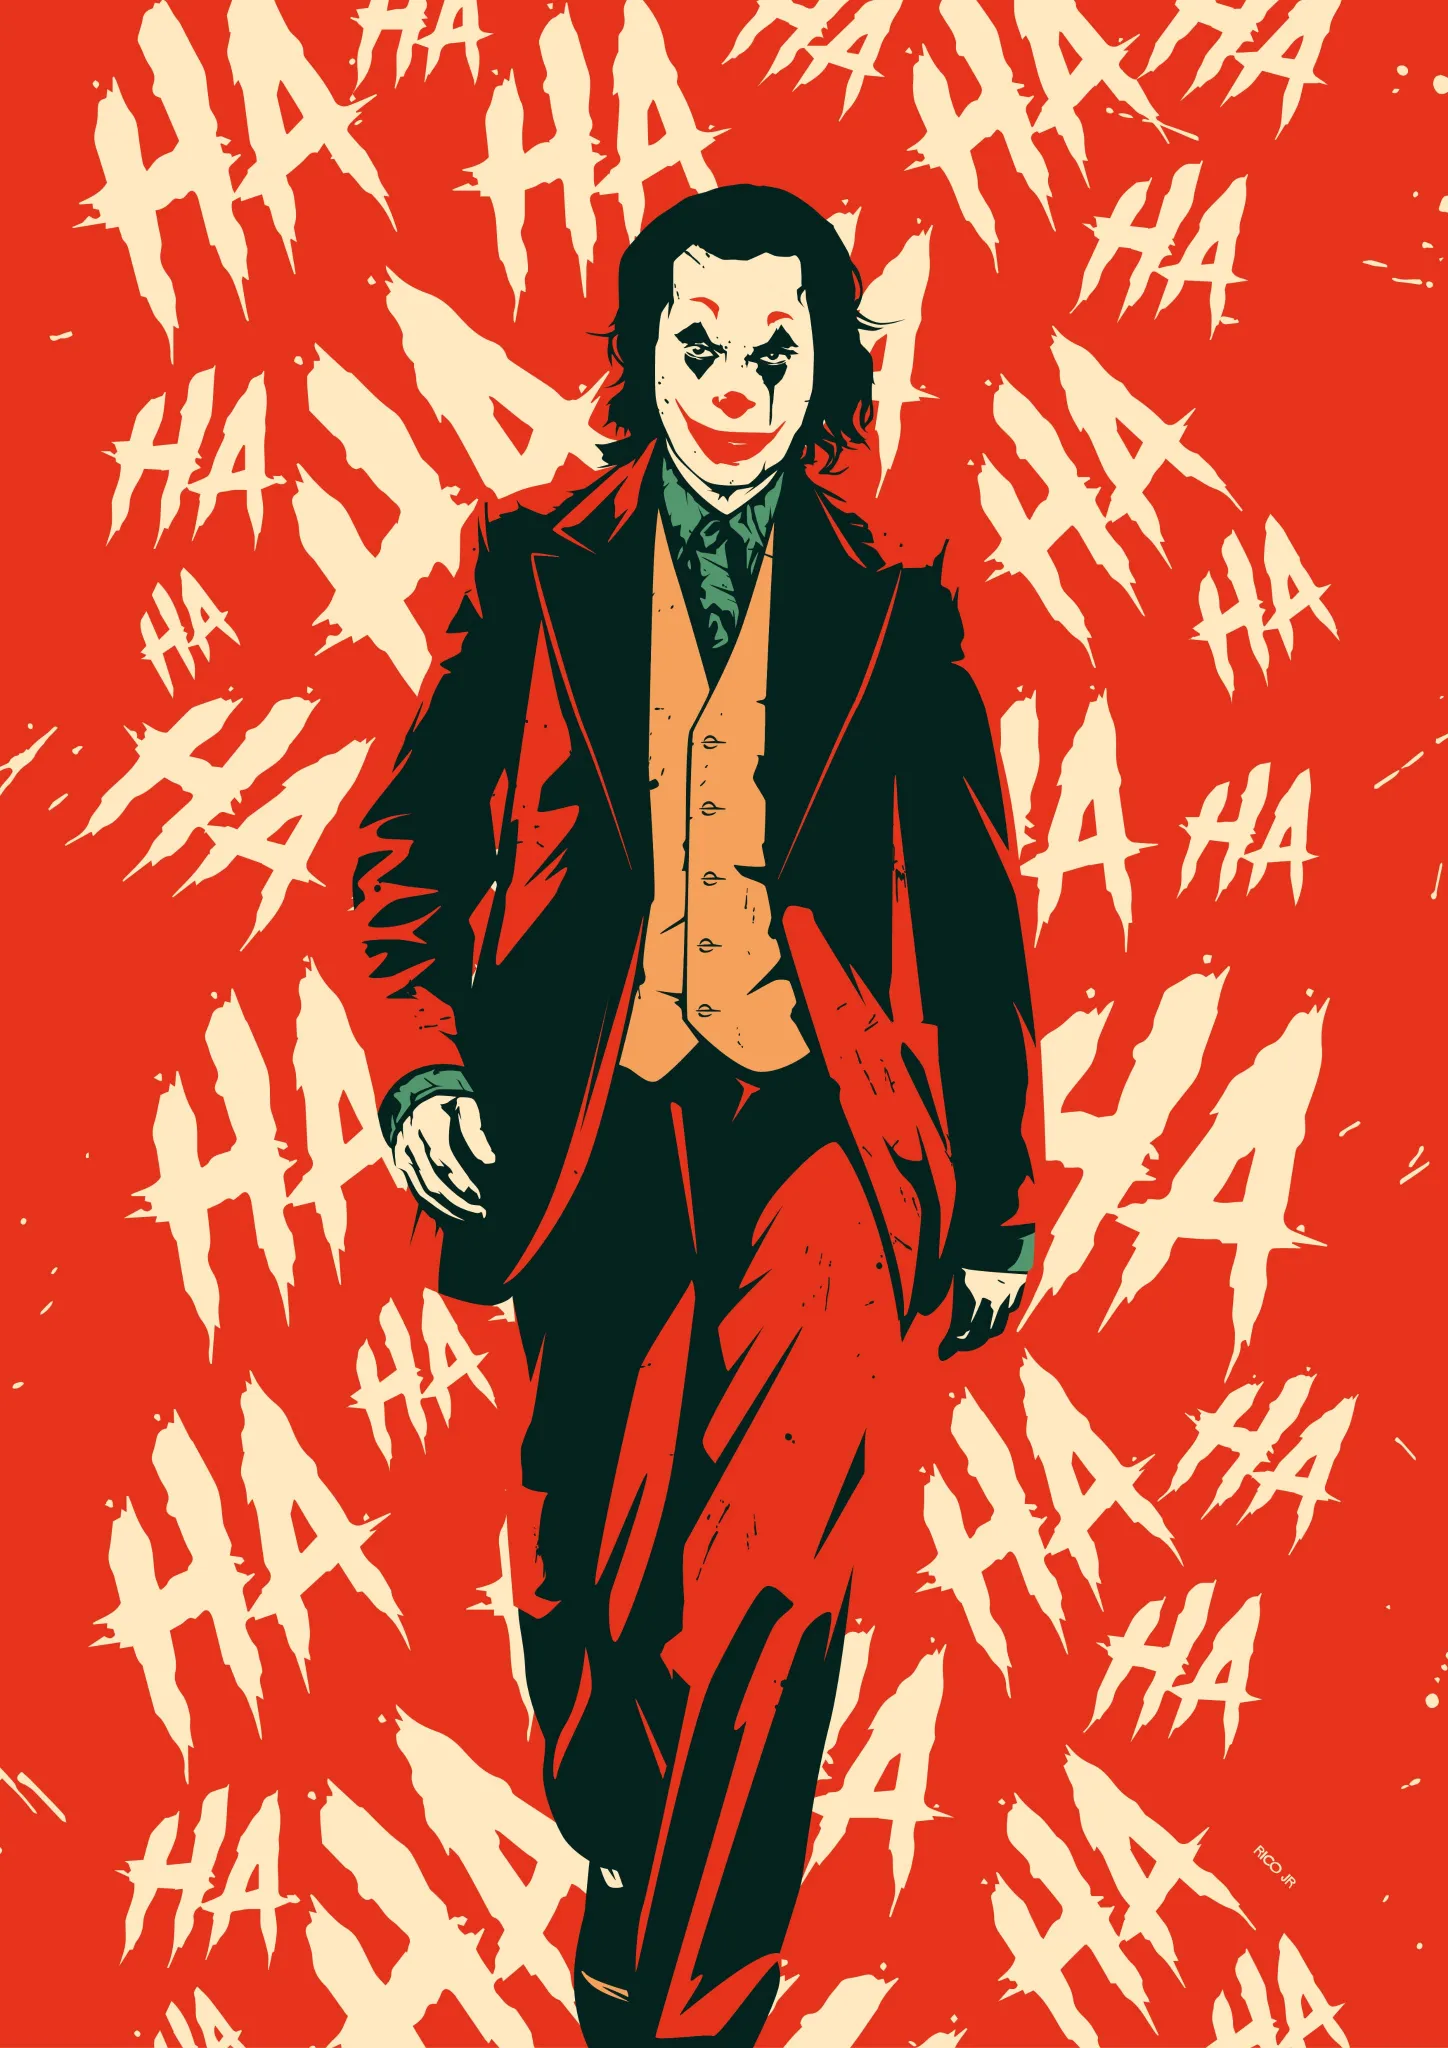 thumb for Joker Haha Wallpaper